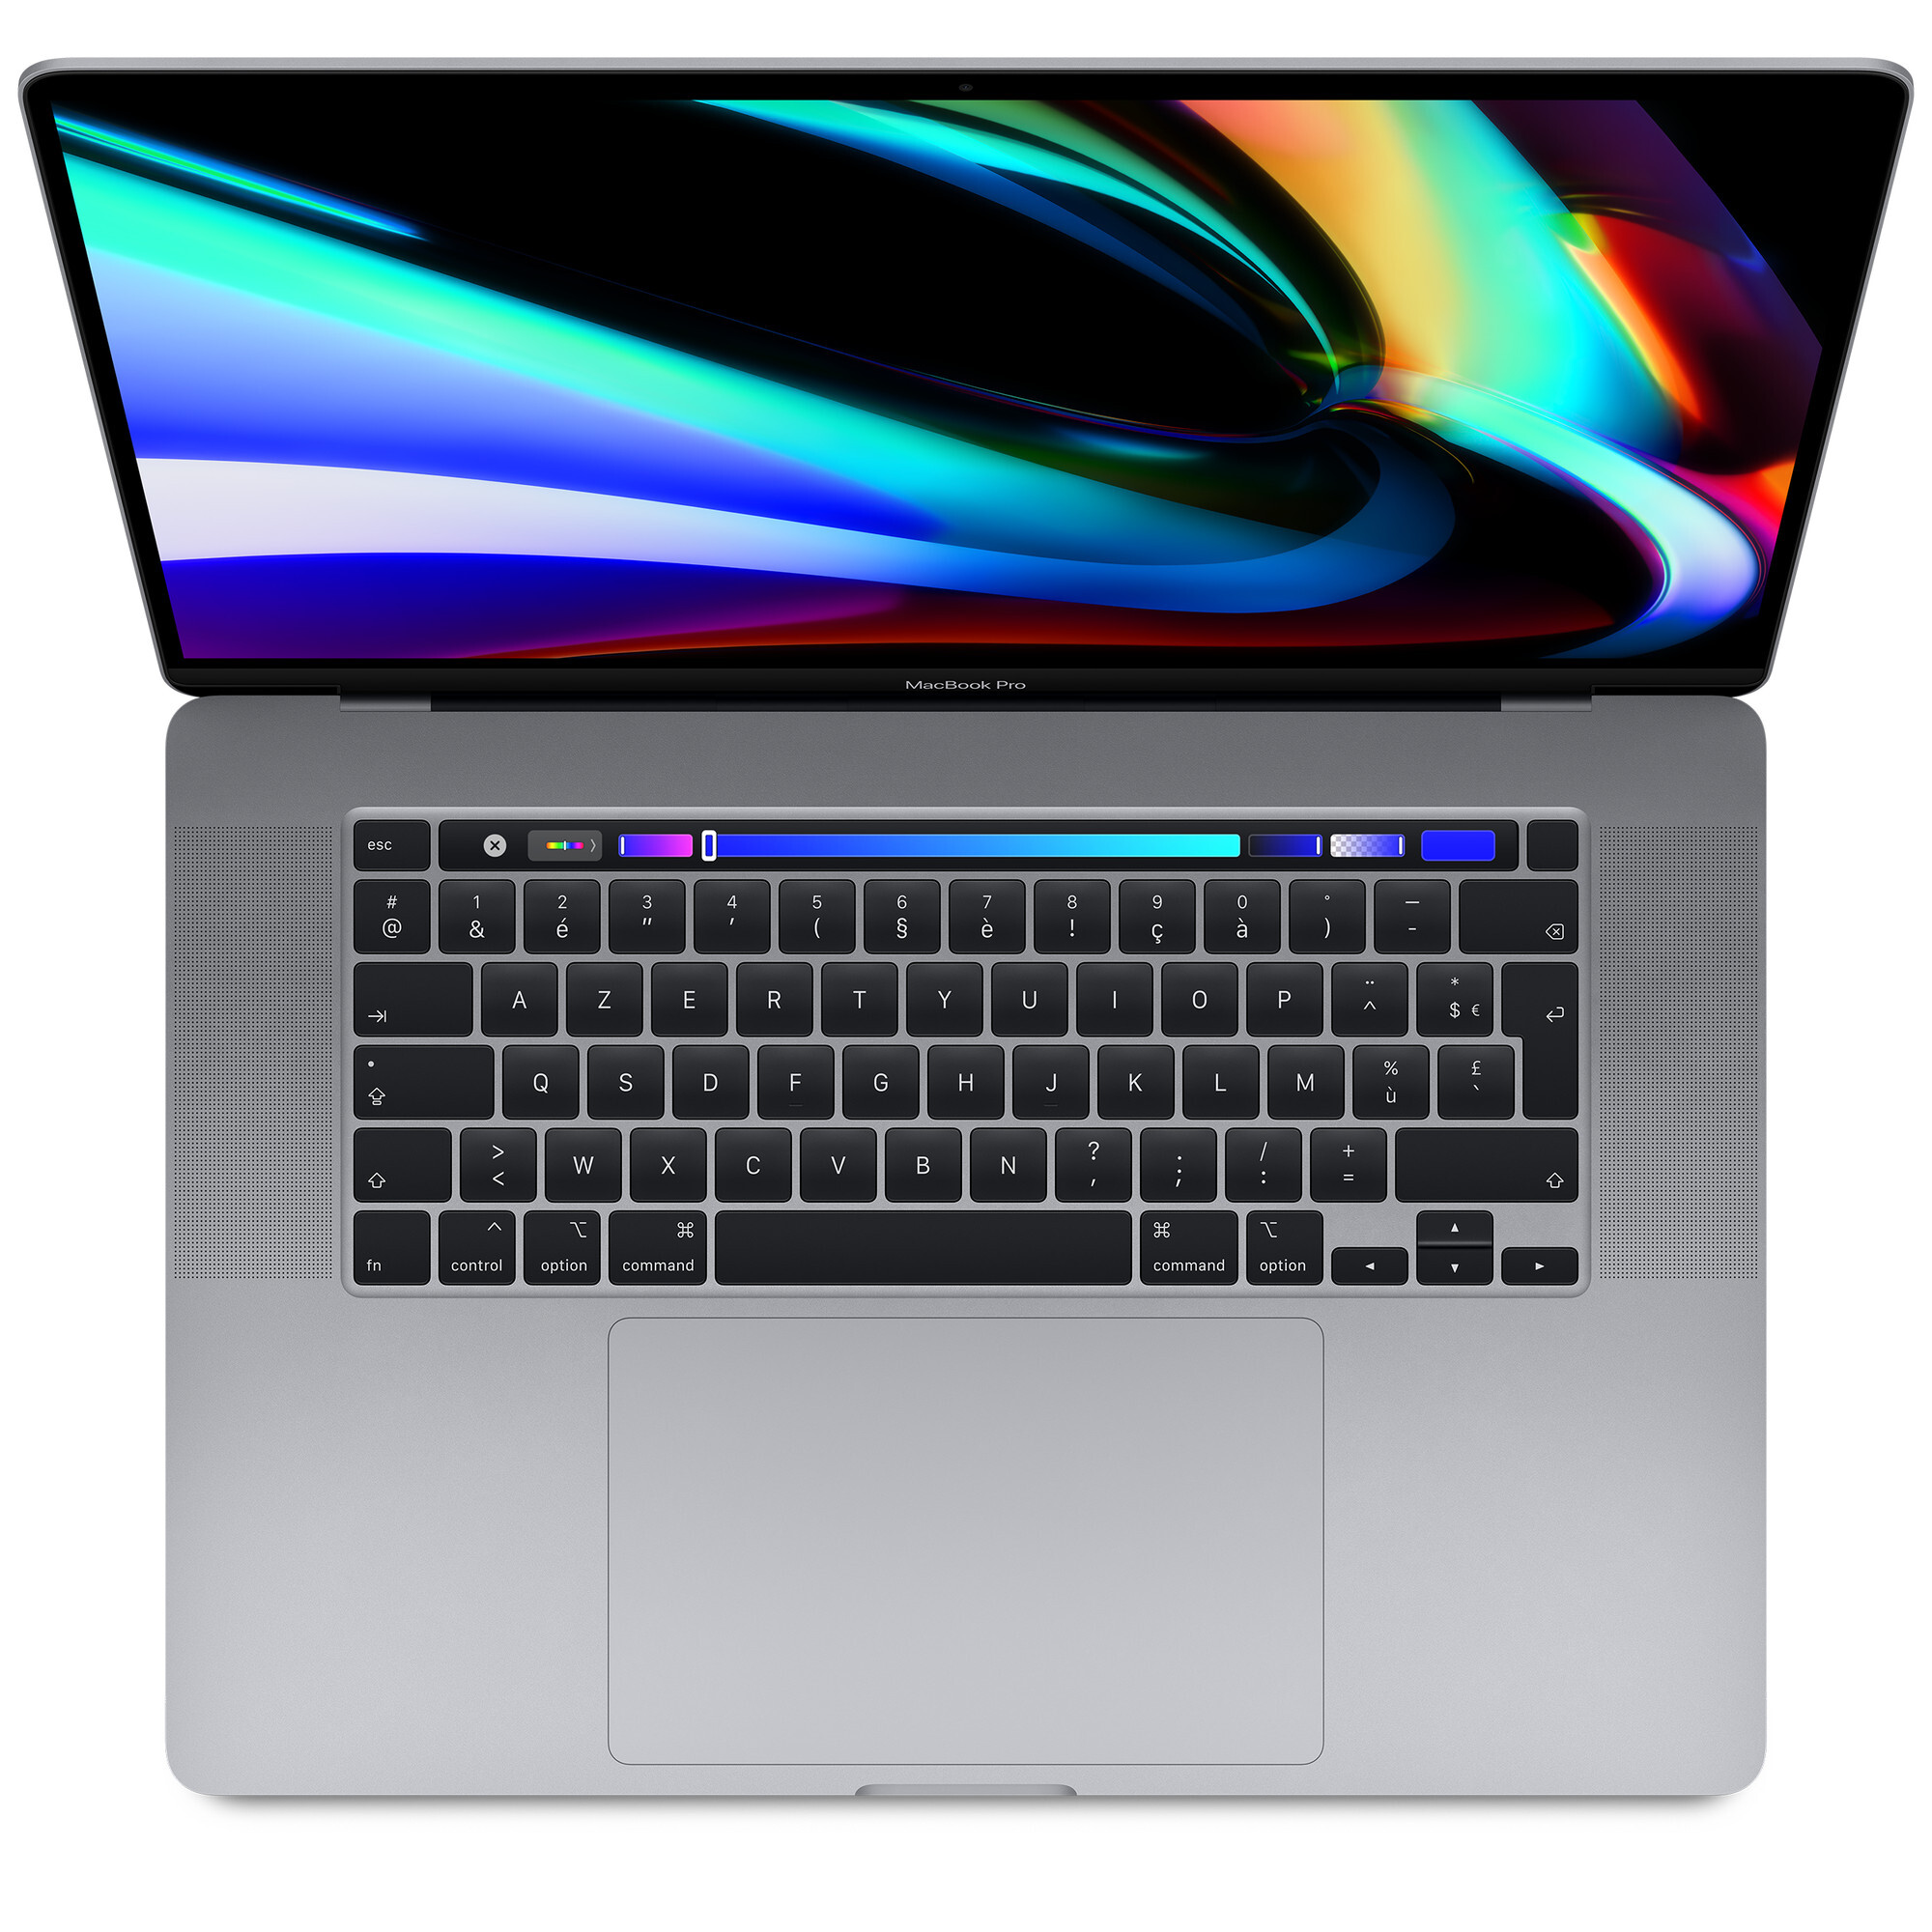 MacBook Pro Core i9 (2019) 16', 2.3 GHz 1 Tb 16 Gb Intel HD Graphics 630, Gris espacial - QWERTY - Espagnol